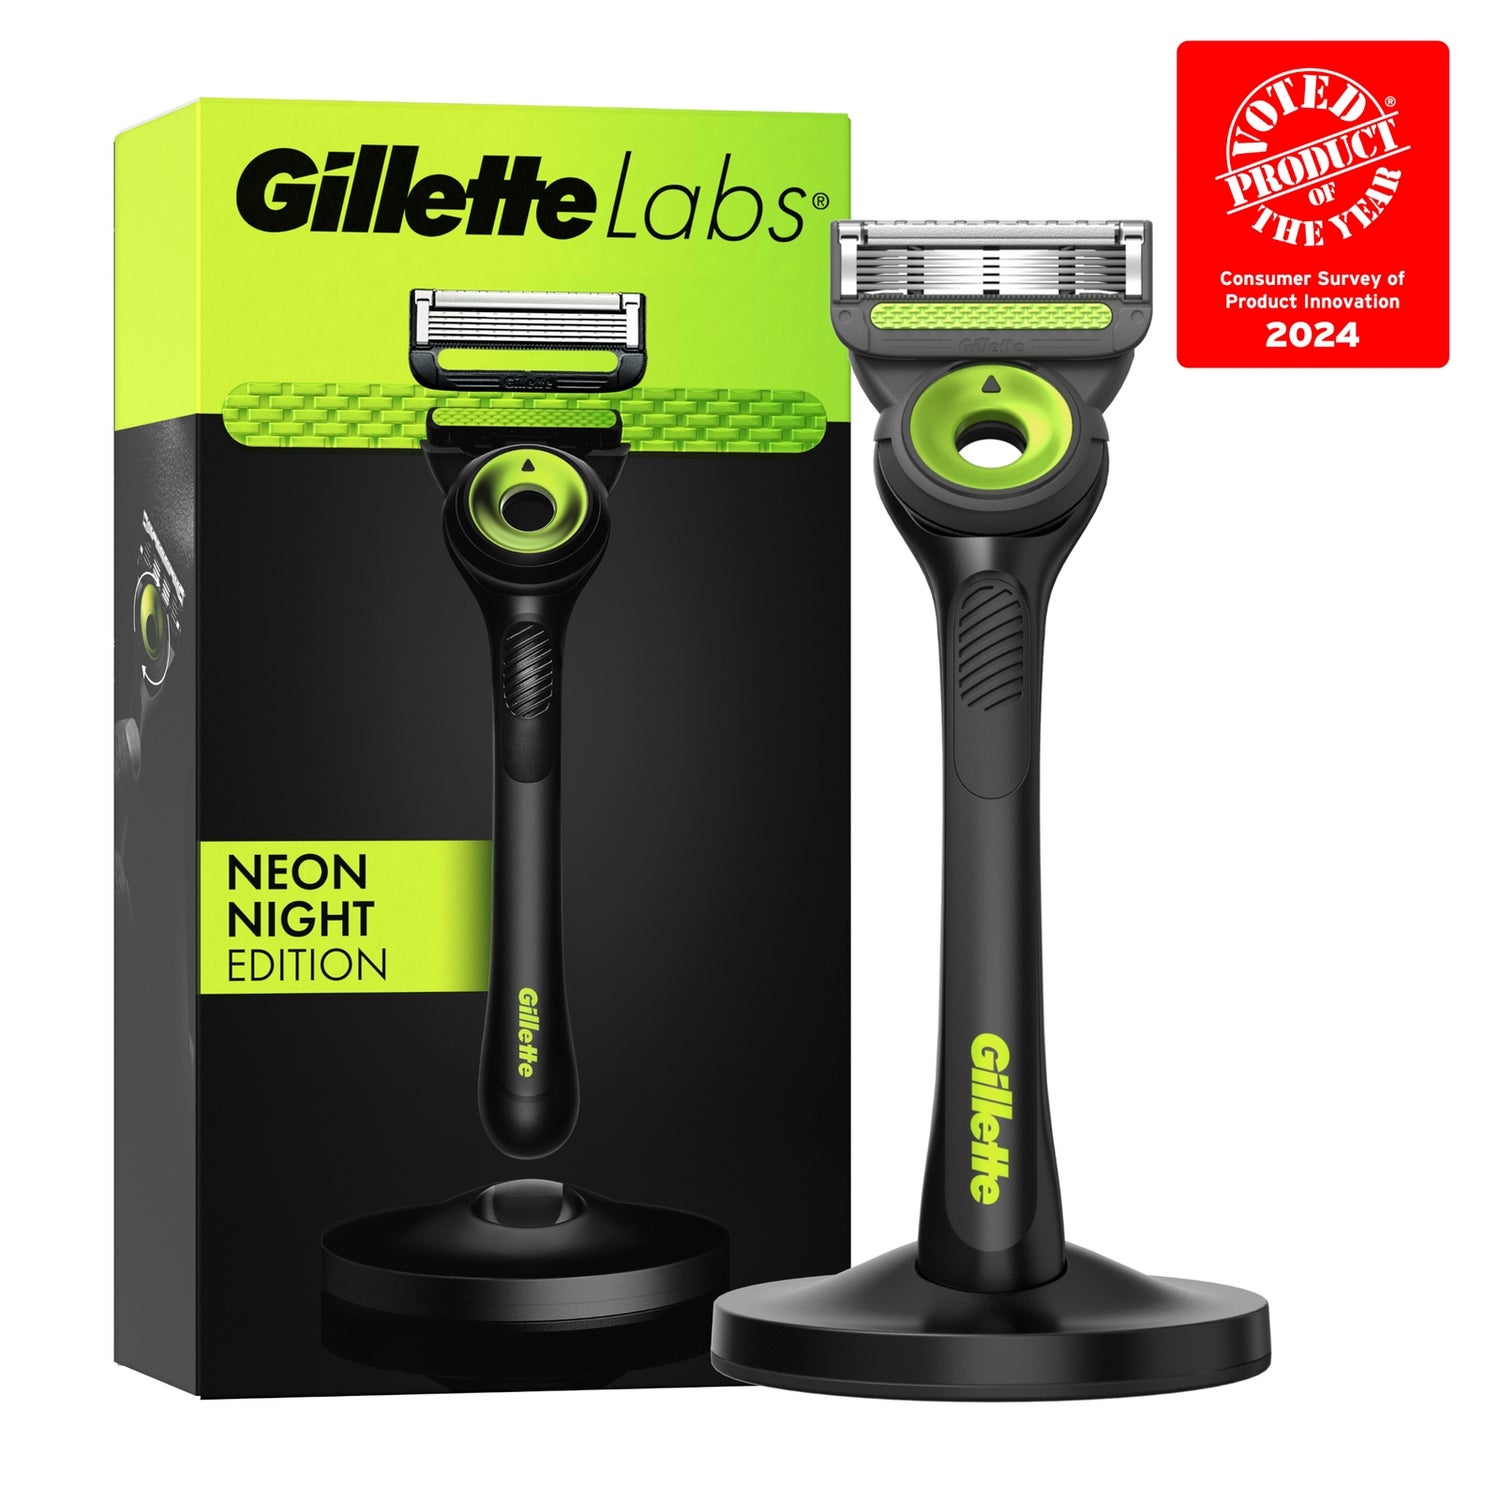 Gillette Labs Neon Night Razor